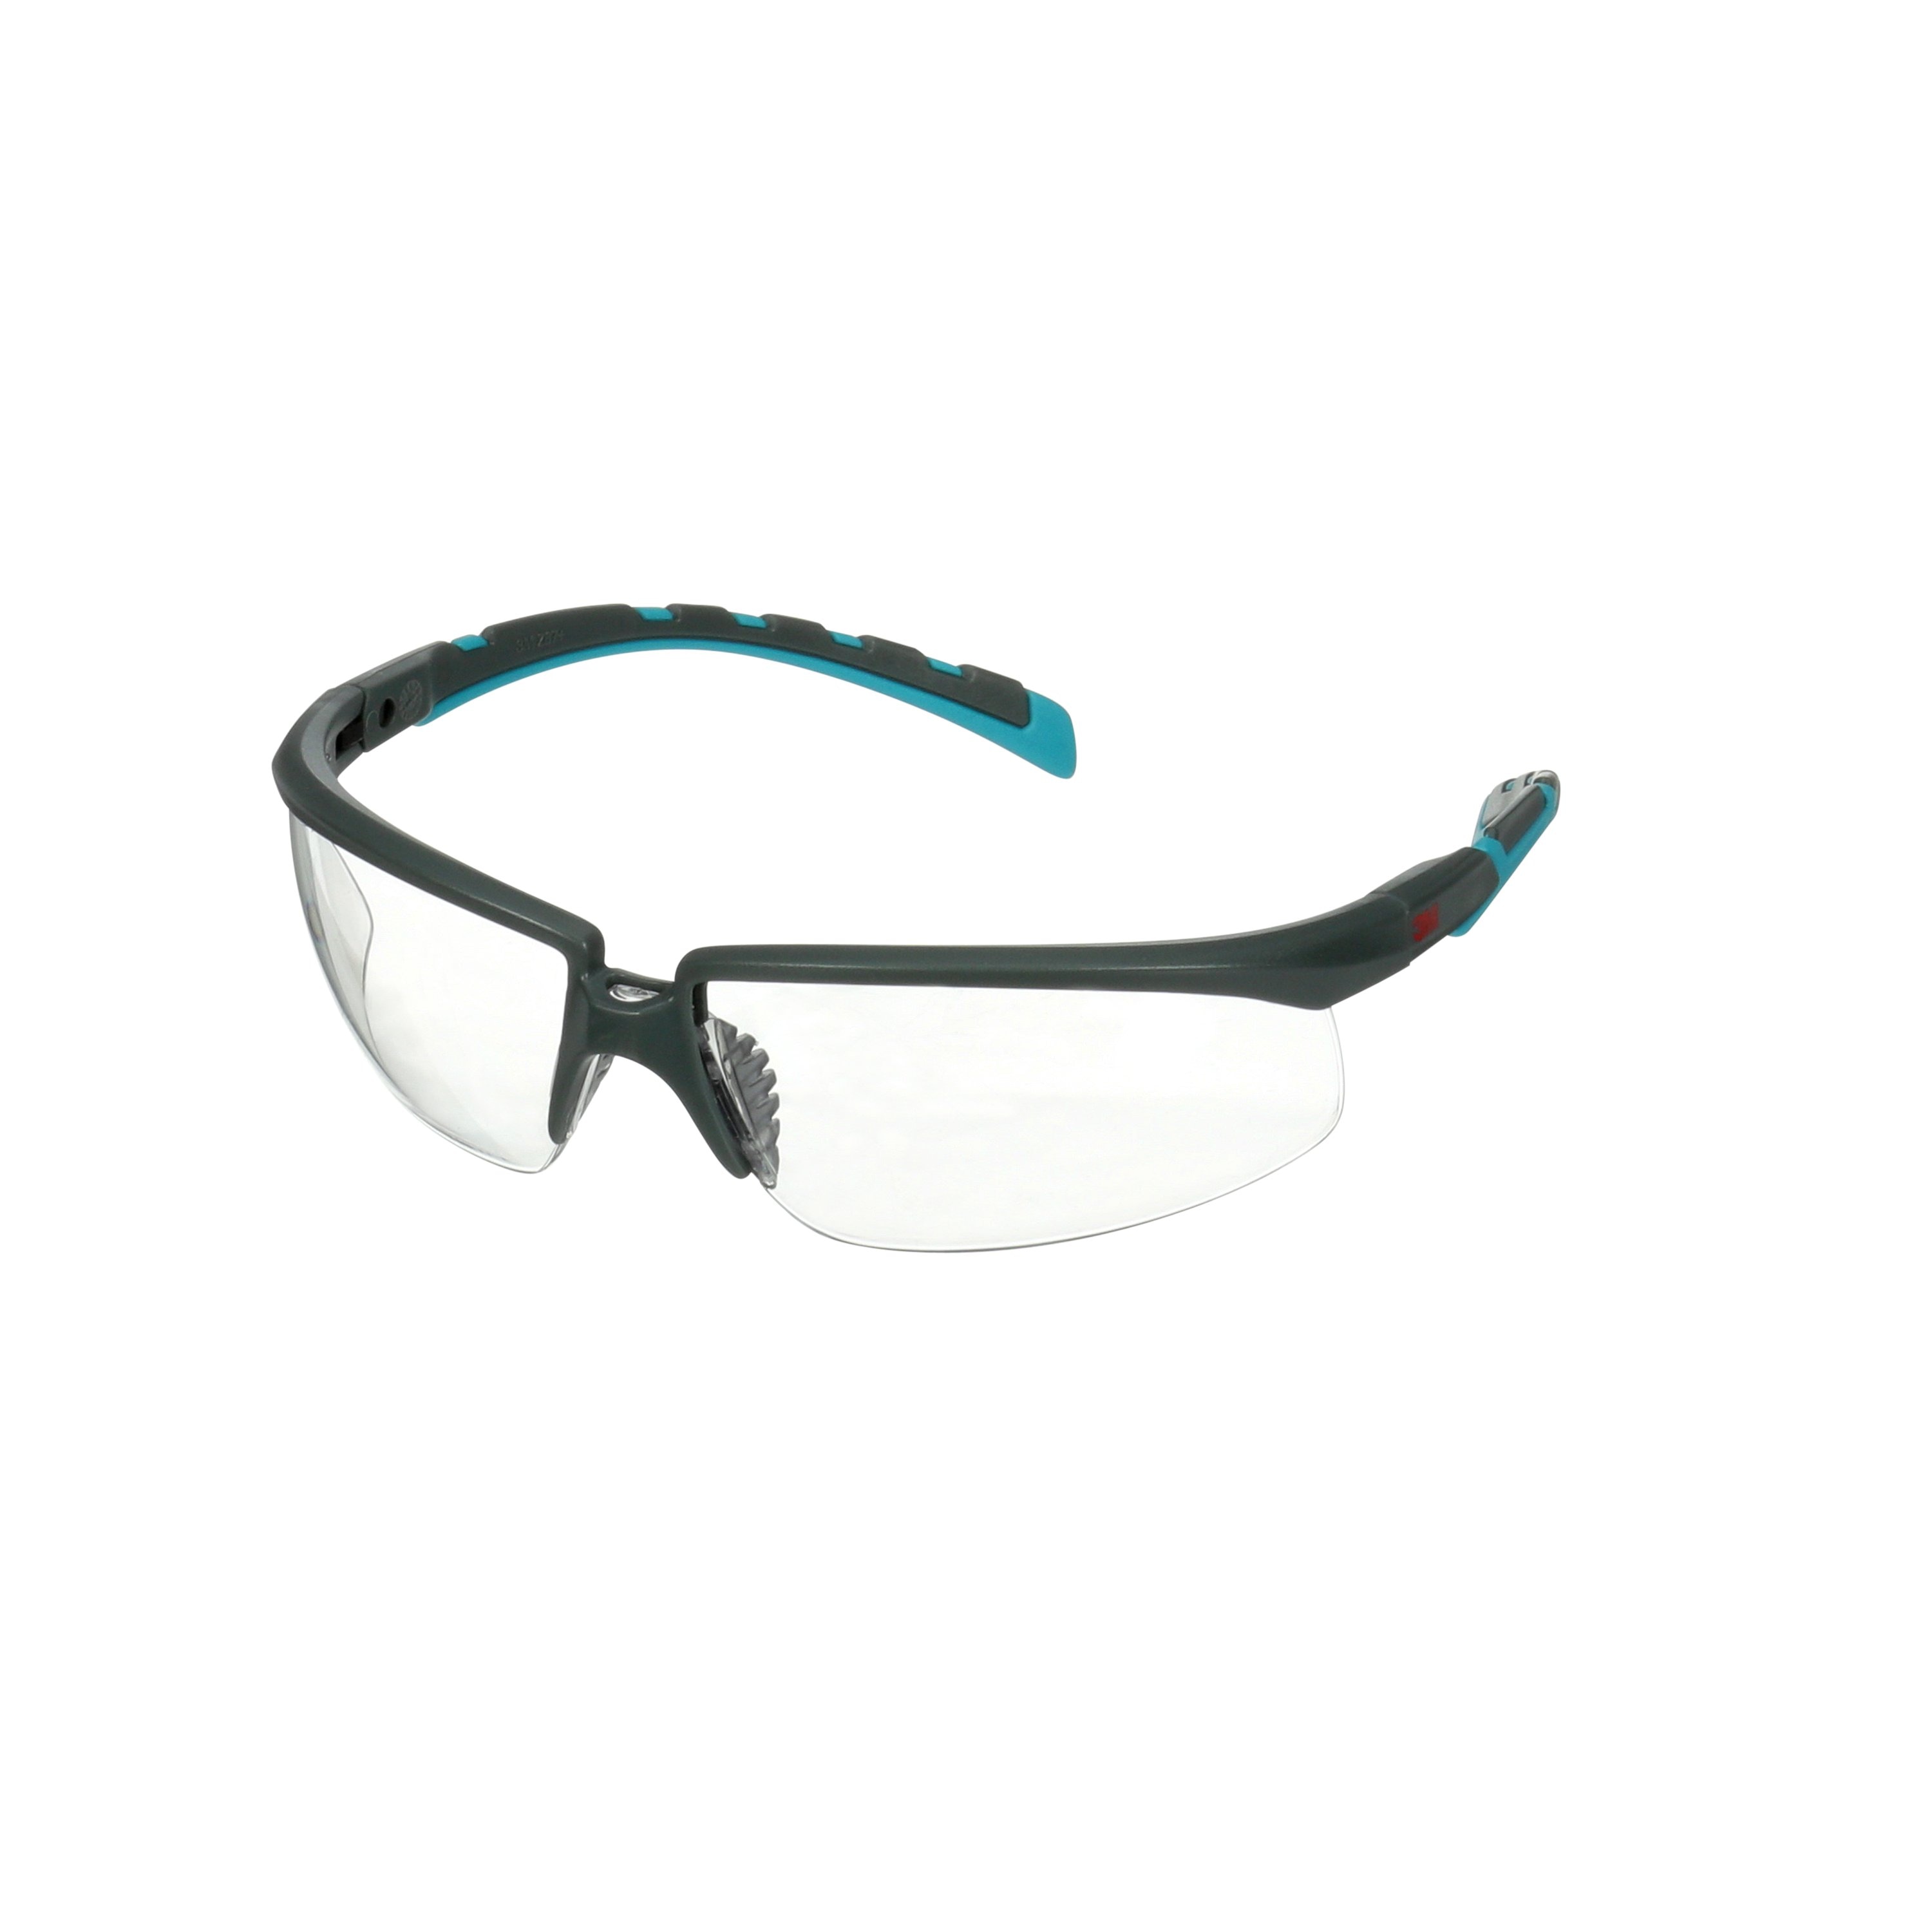 3M 2000 Solus Schutzbrille B/GR Rahmen